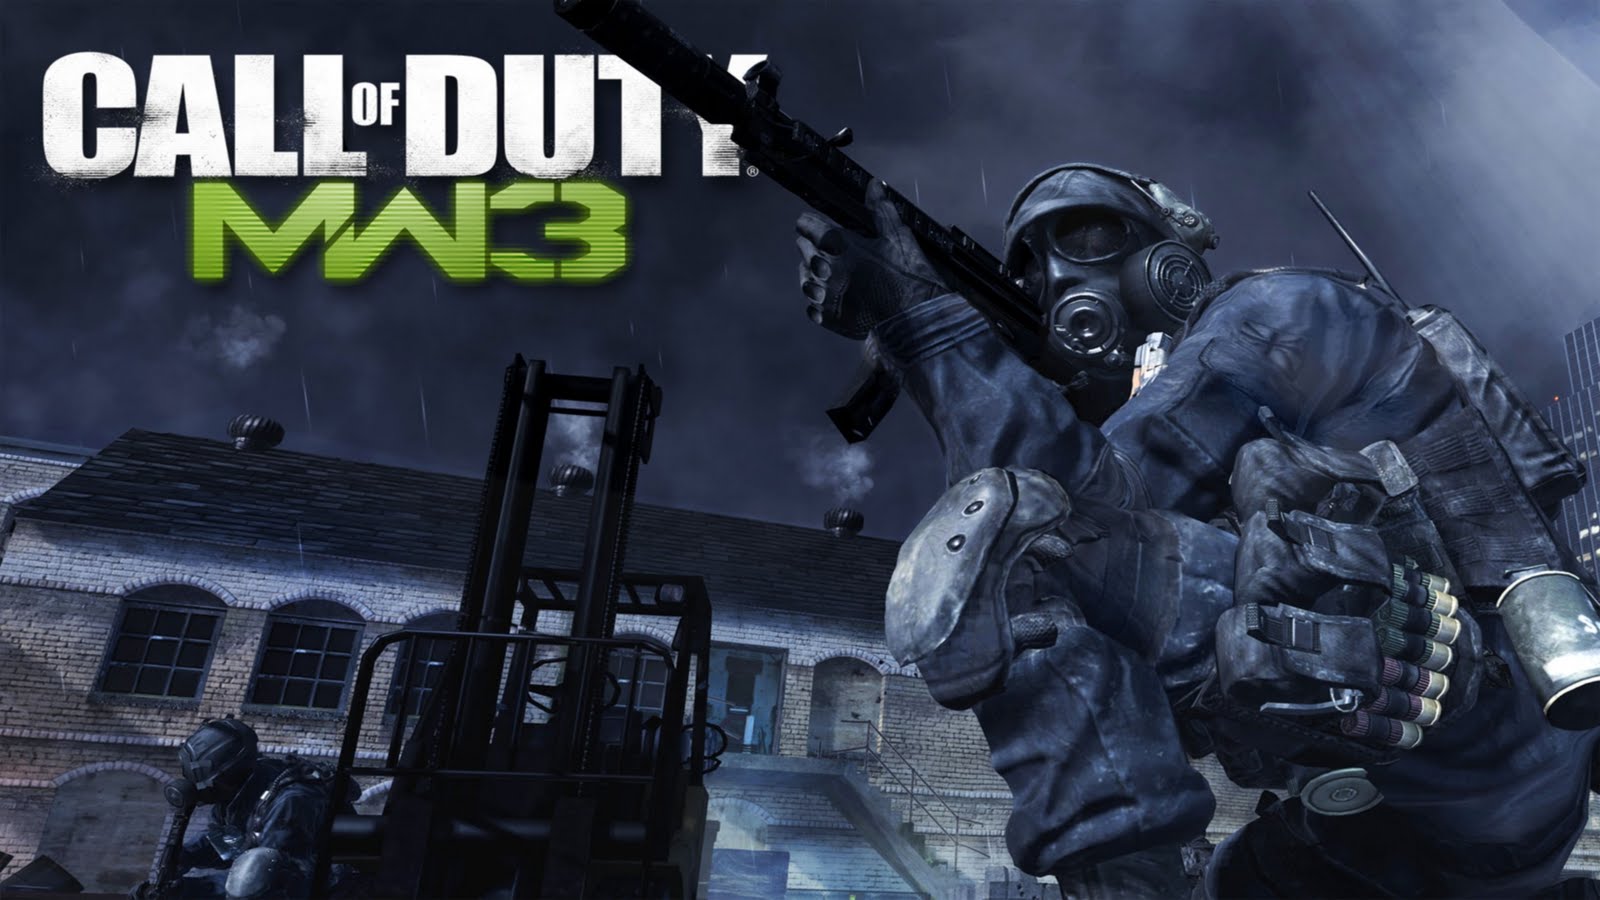 Call of Duty Modern Warfare 3 Wallpaper In HD